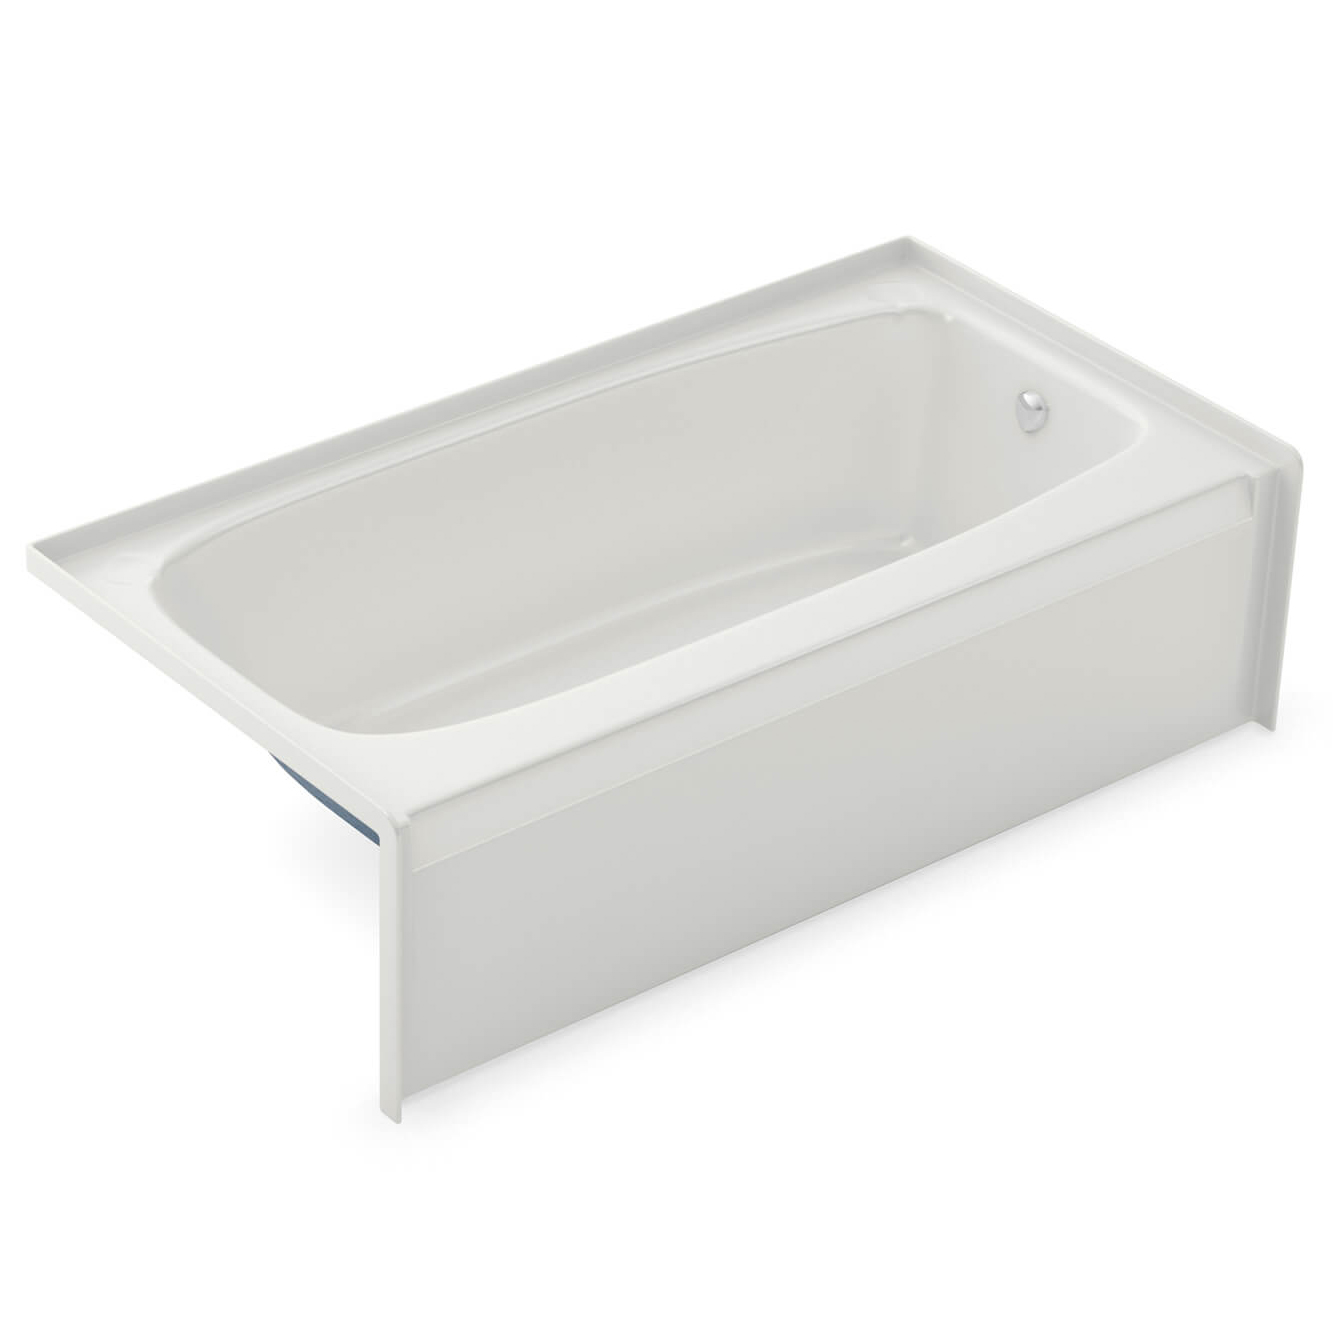 Aker® by MAAX 141078-AFR/R-000-002 Regular Bathtub, TO-3060 